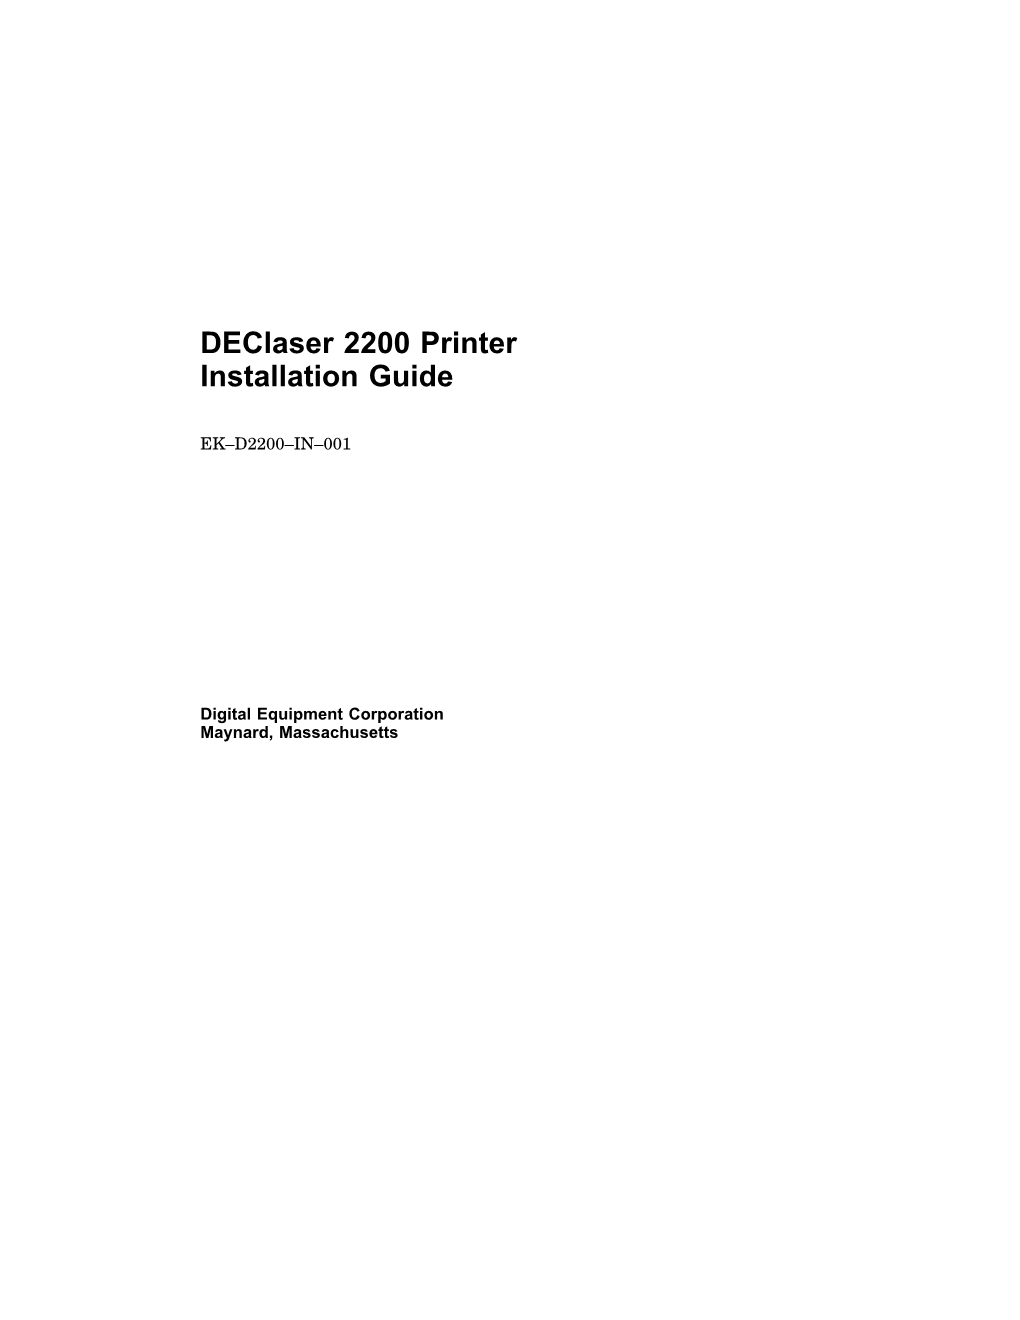 Declaser 2200 Printer Installation Guide